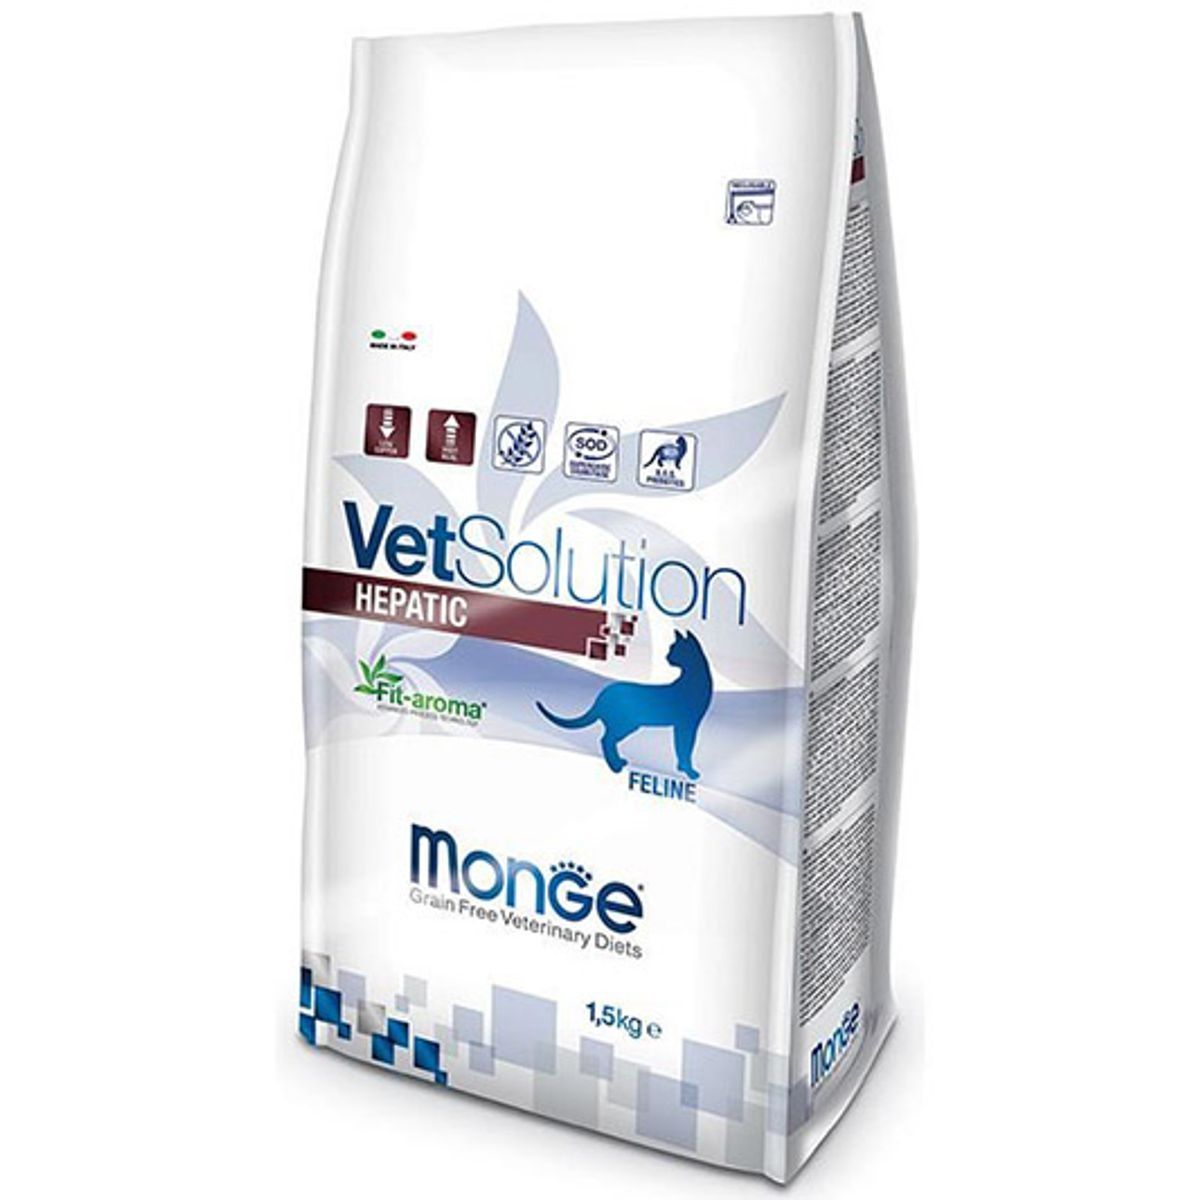 Monge Vetsolution Hepatic Feline, 1.5 Kg